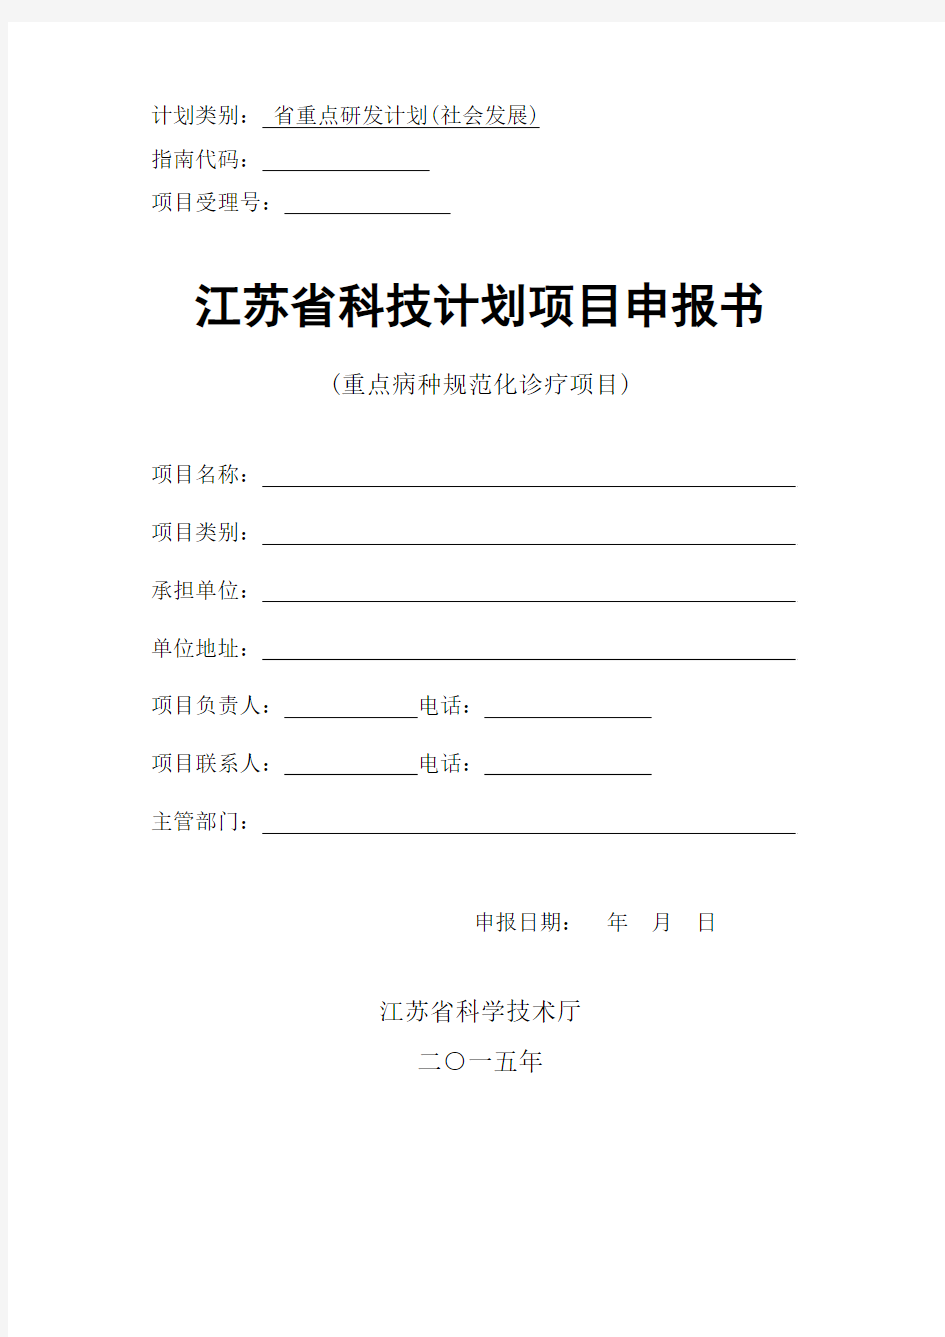 江苏省科技计划项目申报书(重点病种规范化诊疗项目)